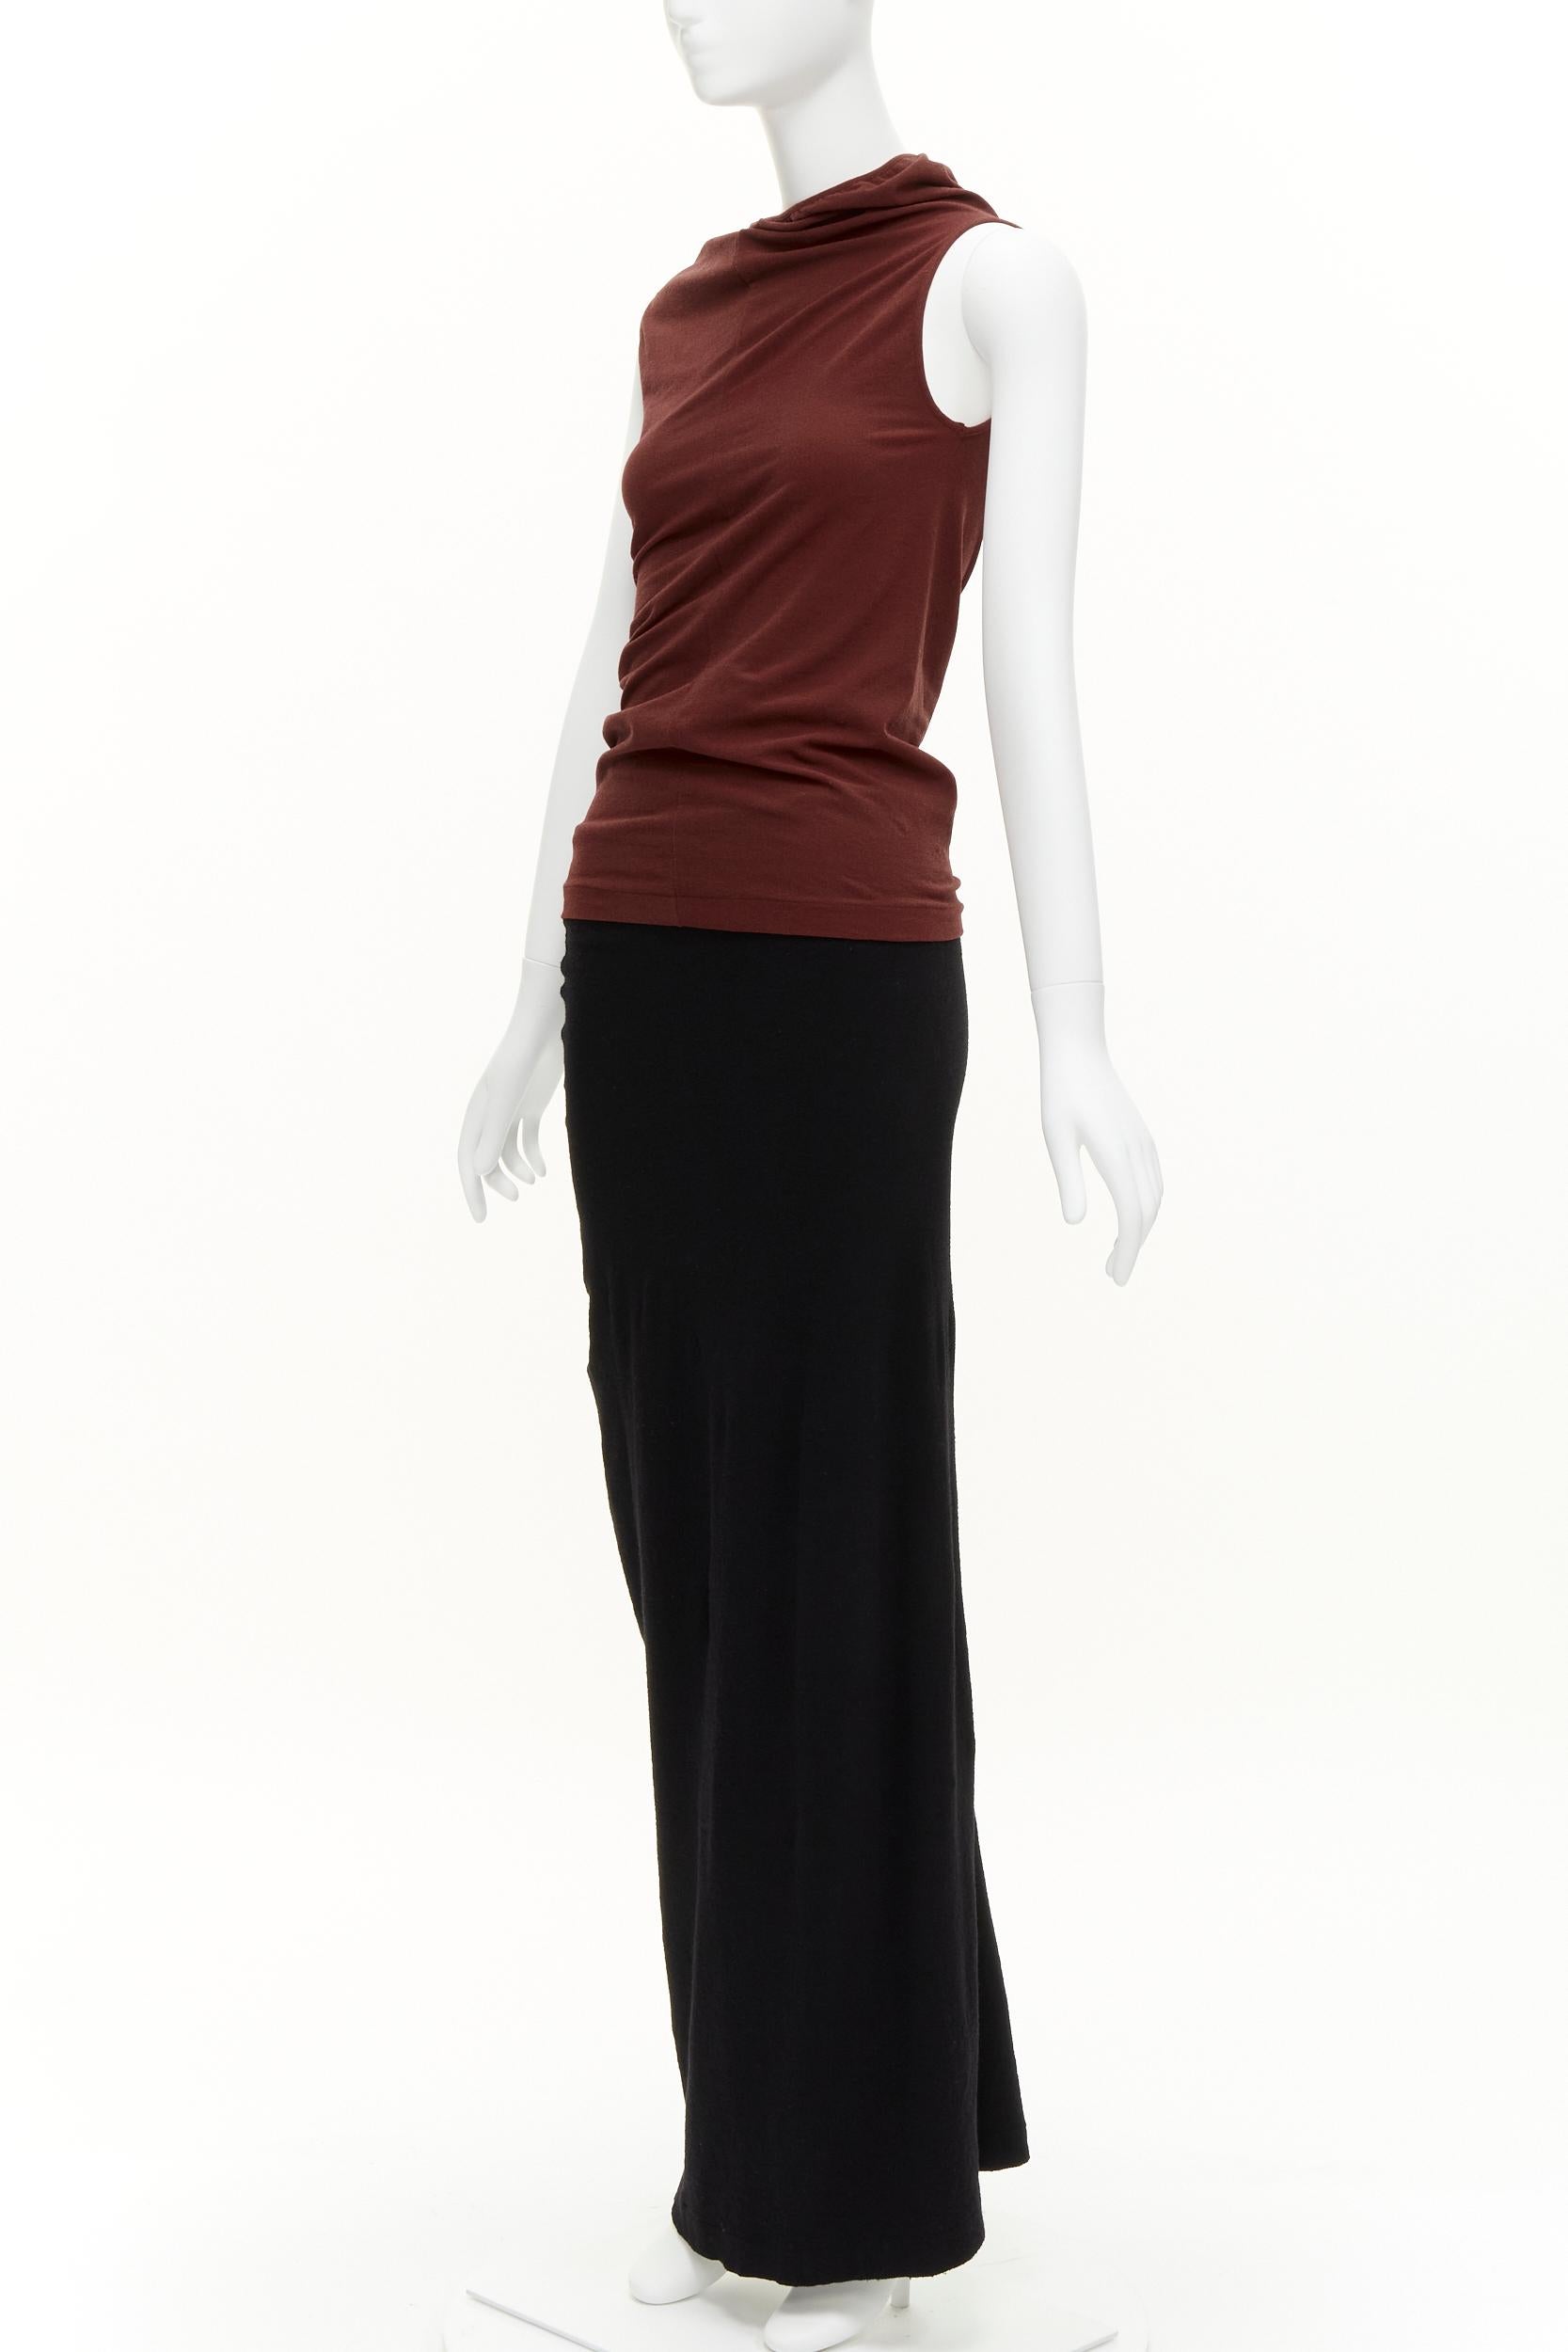 COMME DES GARCONS Vintage 1997 Lumps & Bumps red asymmetric top black skirt M For Sale 2